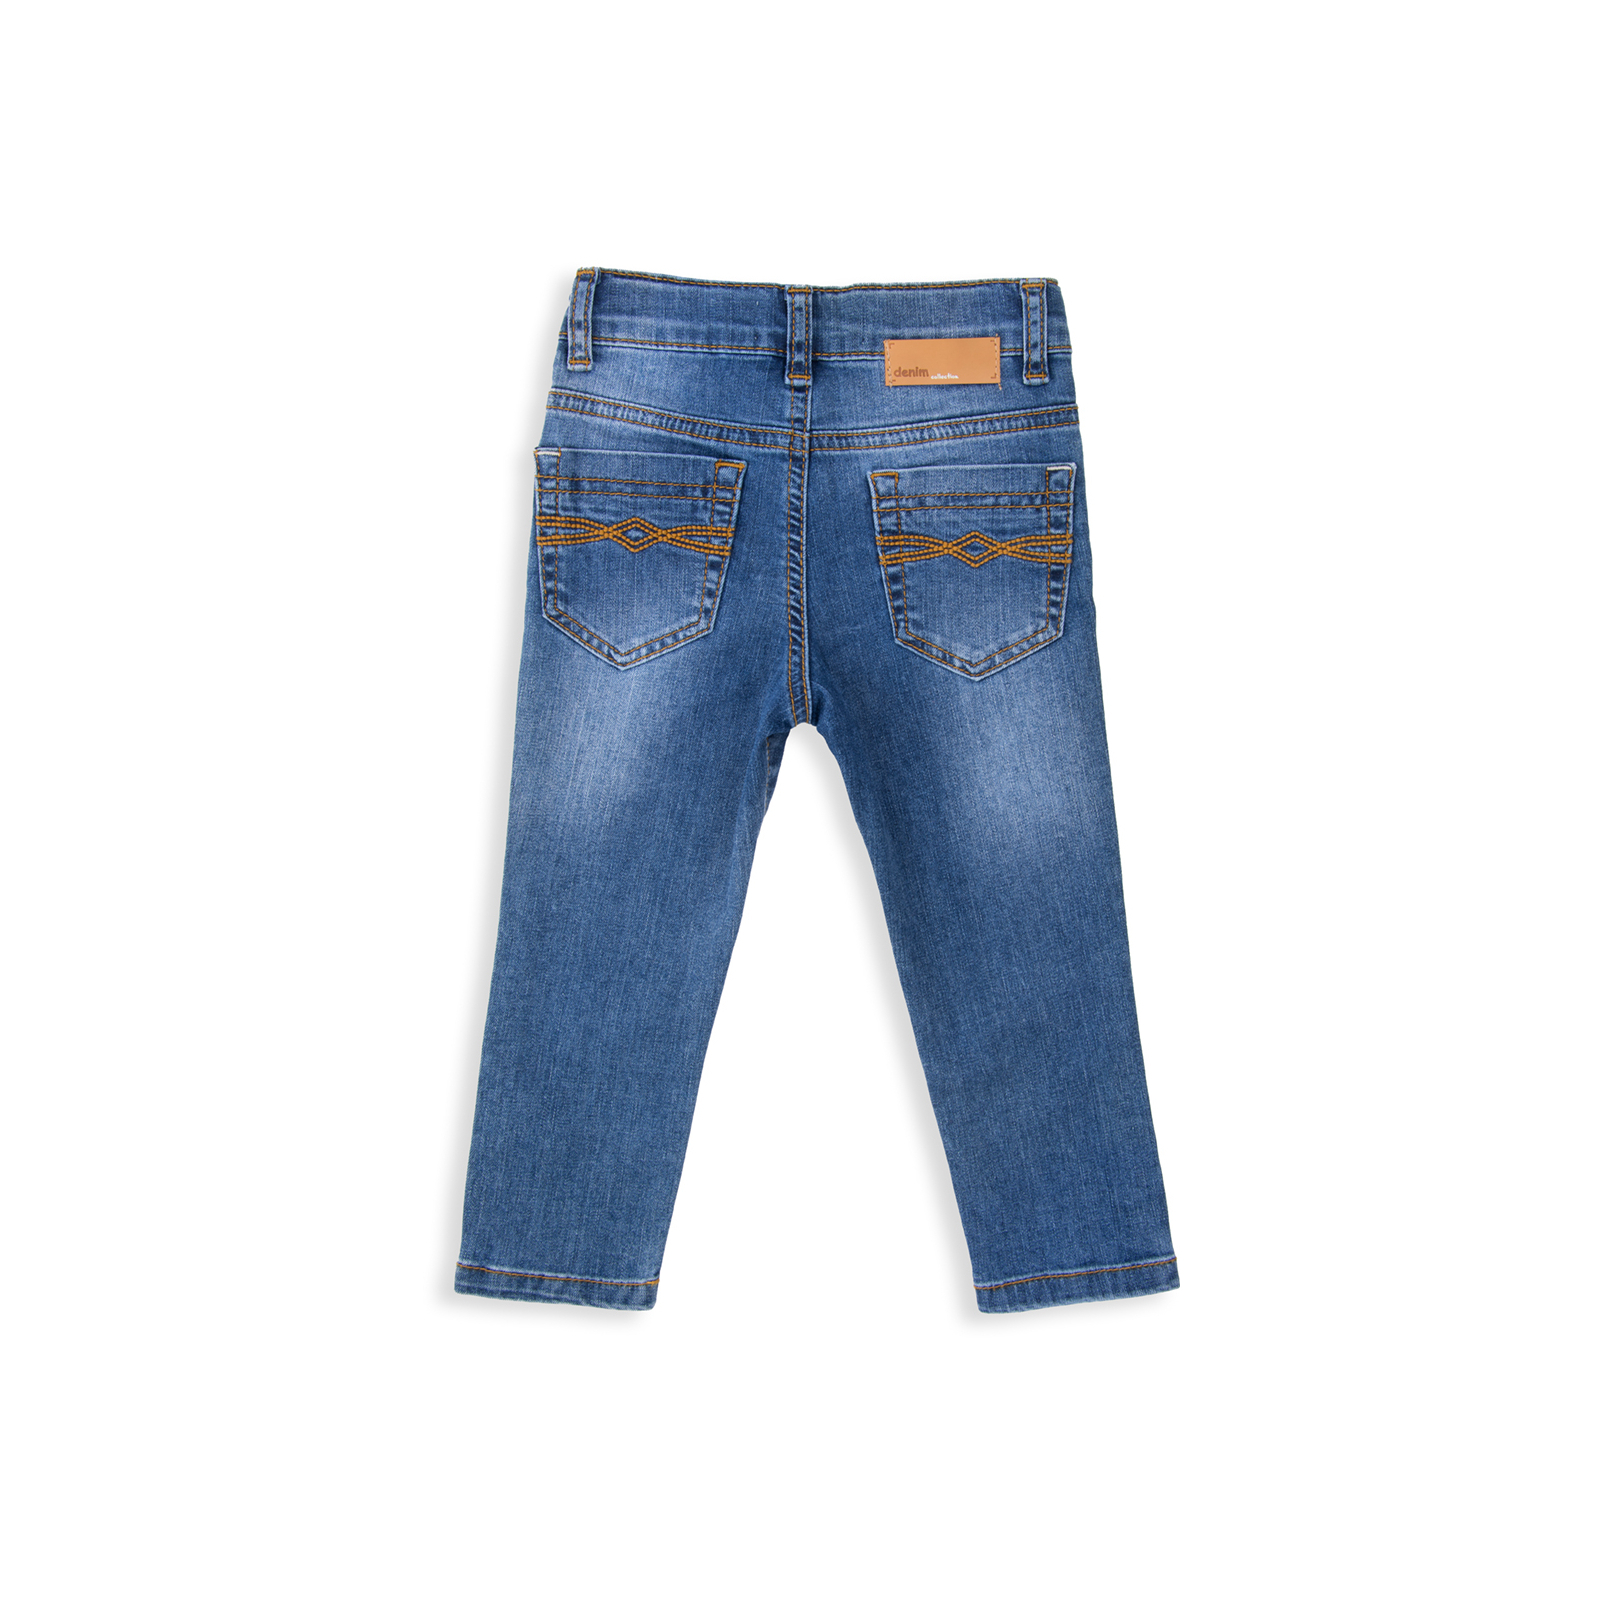 Джинсы Breeze синие (15YECPAN371-80B-jeans) изображение 2